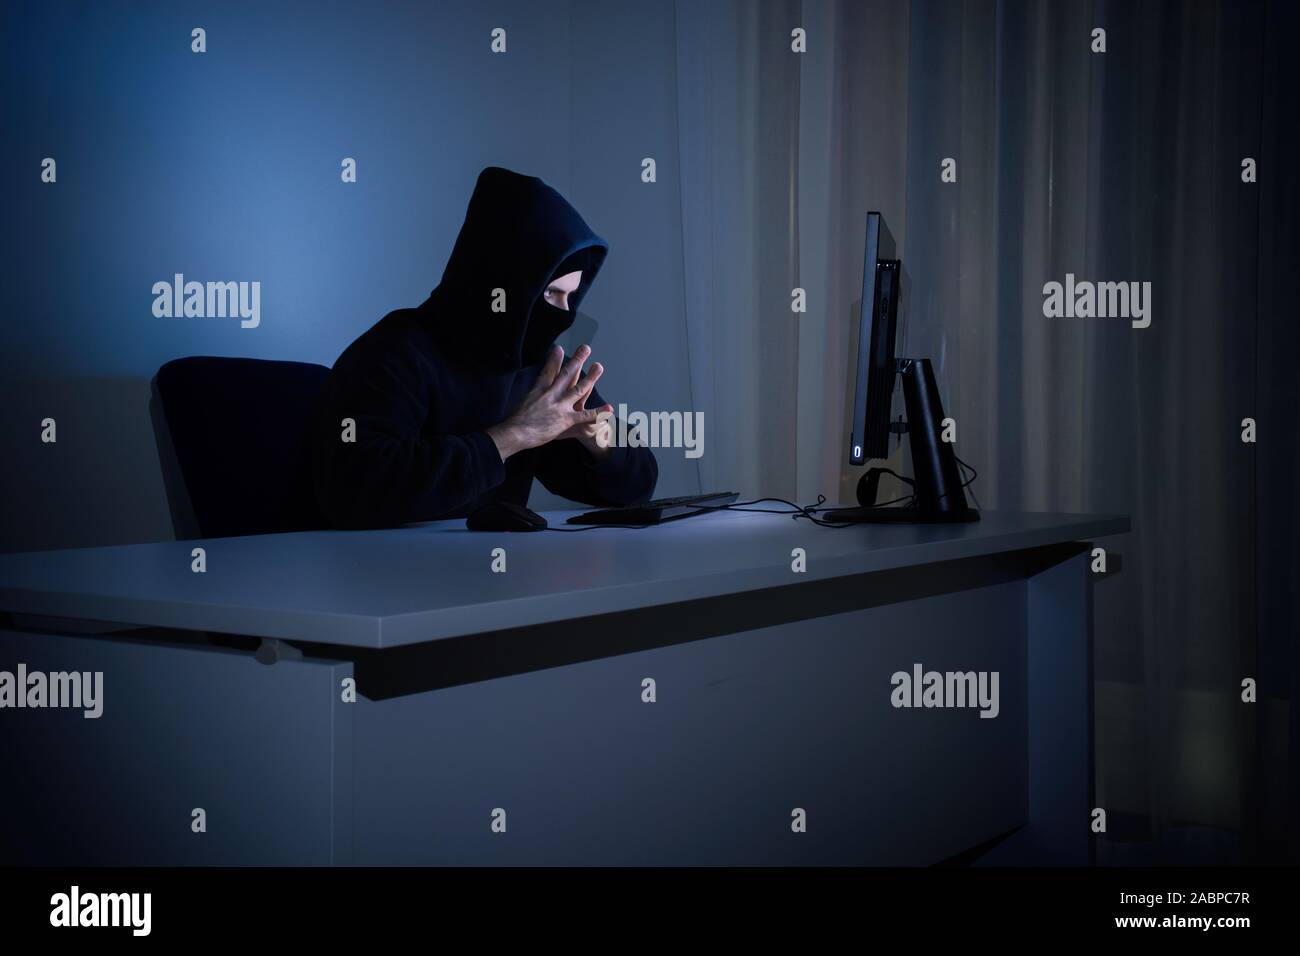 Hacker masqué en face à l'ordinateur en salle sombre représente le danger de la navigation sur internet. Concept de sécurité Internet. Banque D'Images